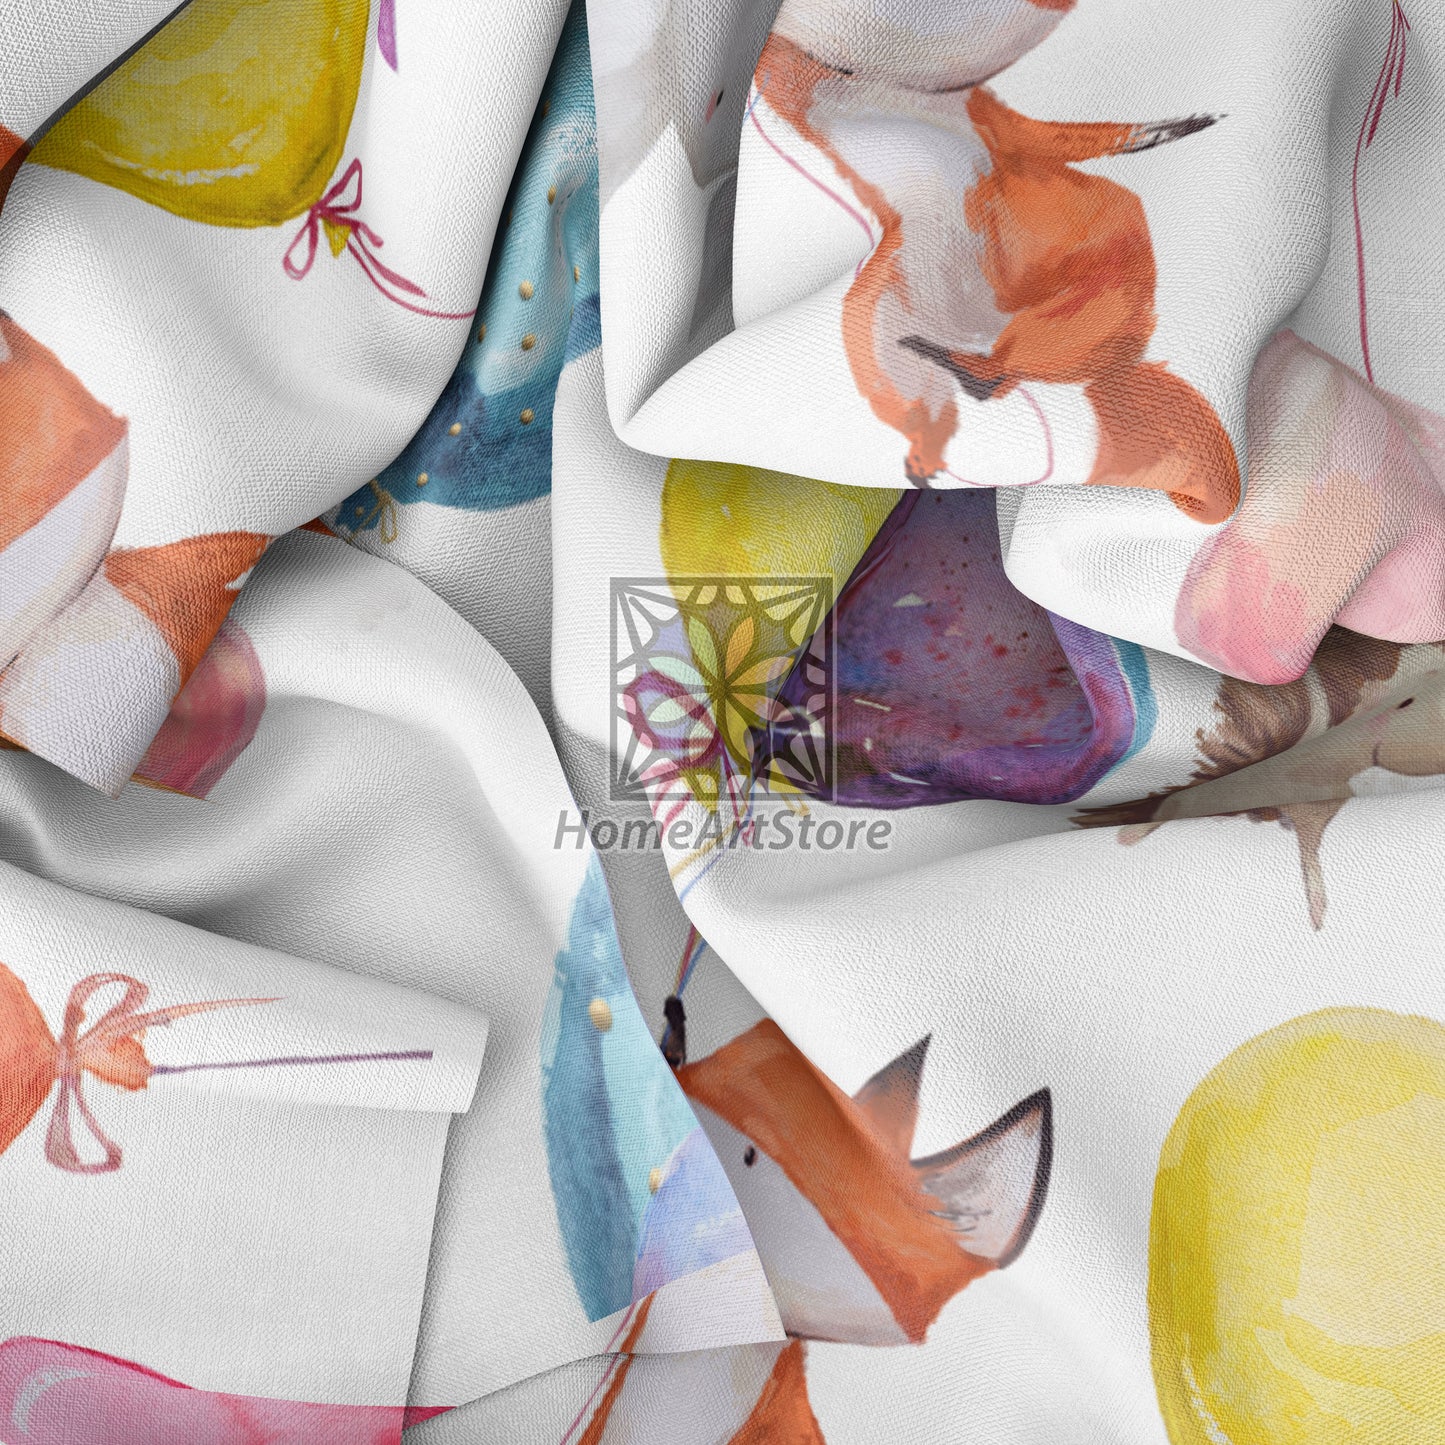 Watercolor Forest Animal Curtain, Balloon Themed Curtain, Baby Fox, Rabbit, Hedgehog Curtain, Cute Nursery Decor